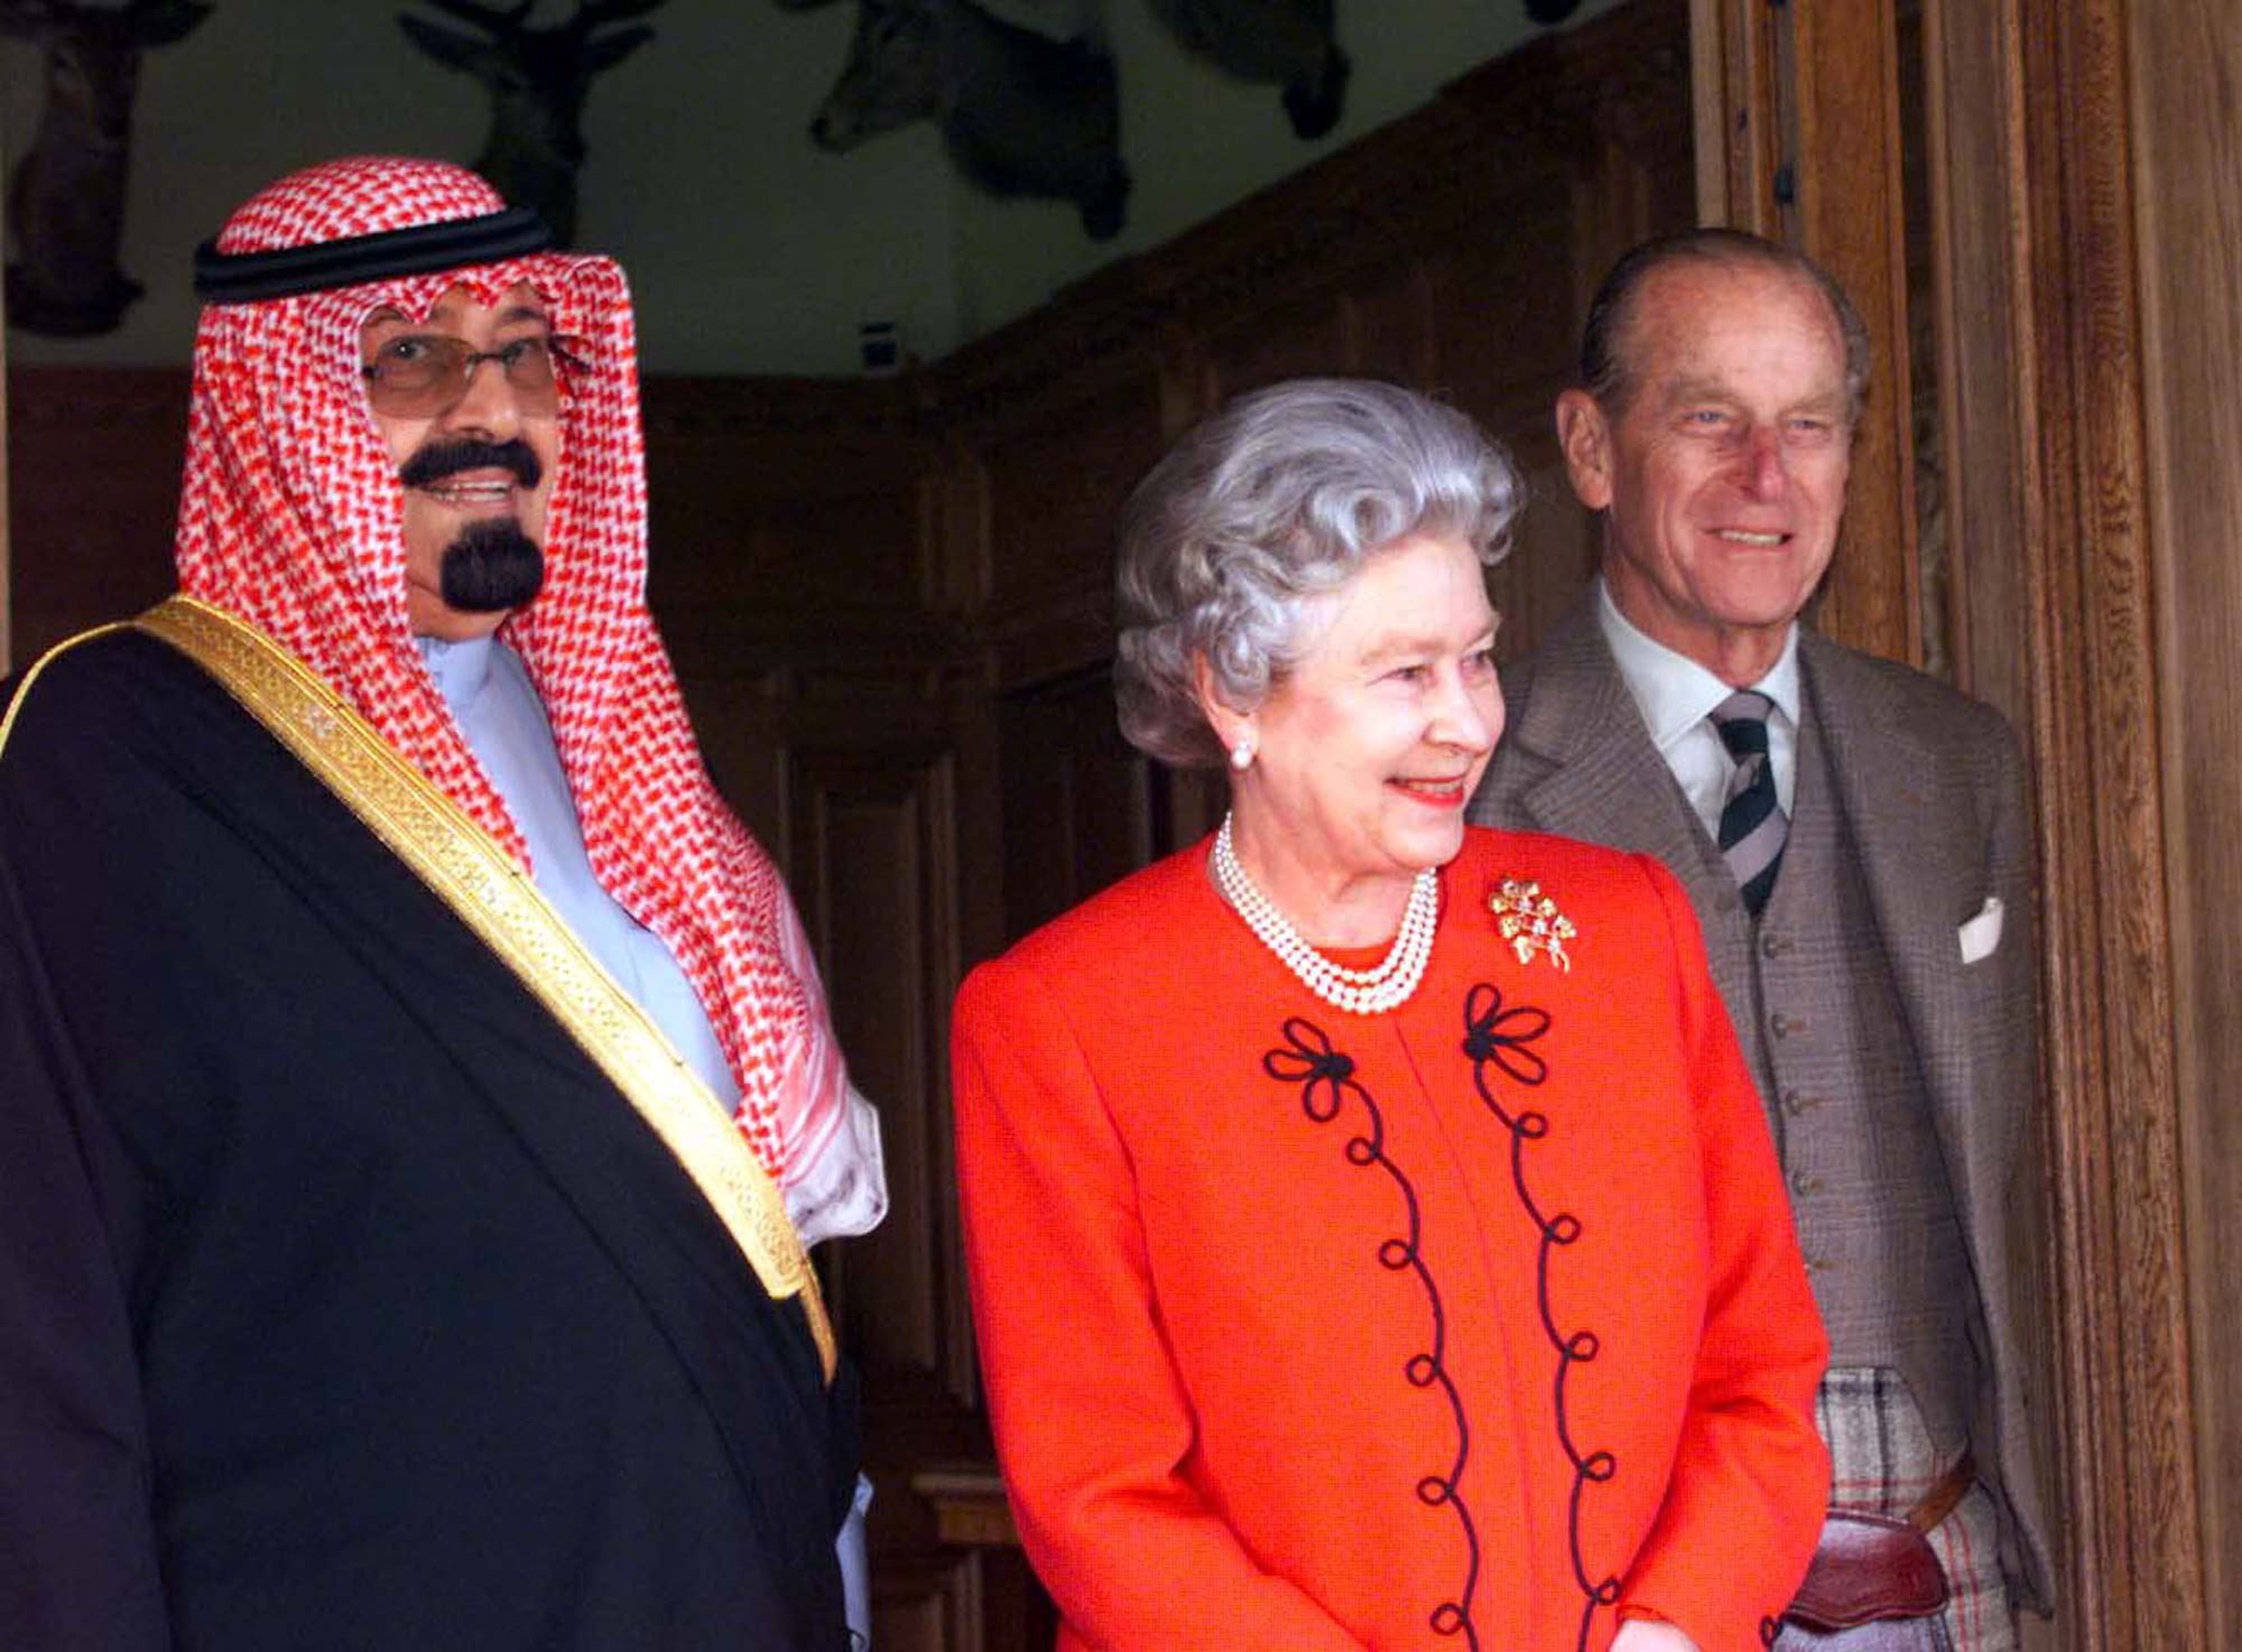 La reine et le duc d’Édimbourg se tiennent aux côtés du prince héritier d’Arabie saoudite, le prince Abdallah ben Abdelaziz al-Saoud (à gauche) après un déjeuner au château de Balmoral en septembre 1998 (AFP)